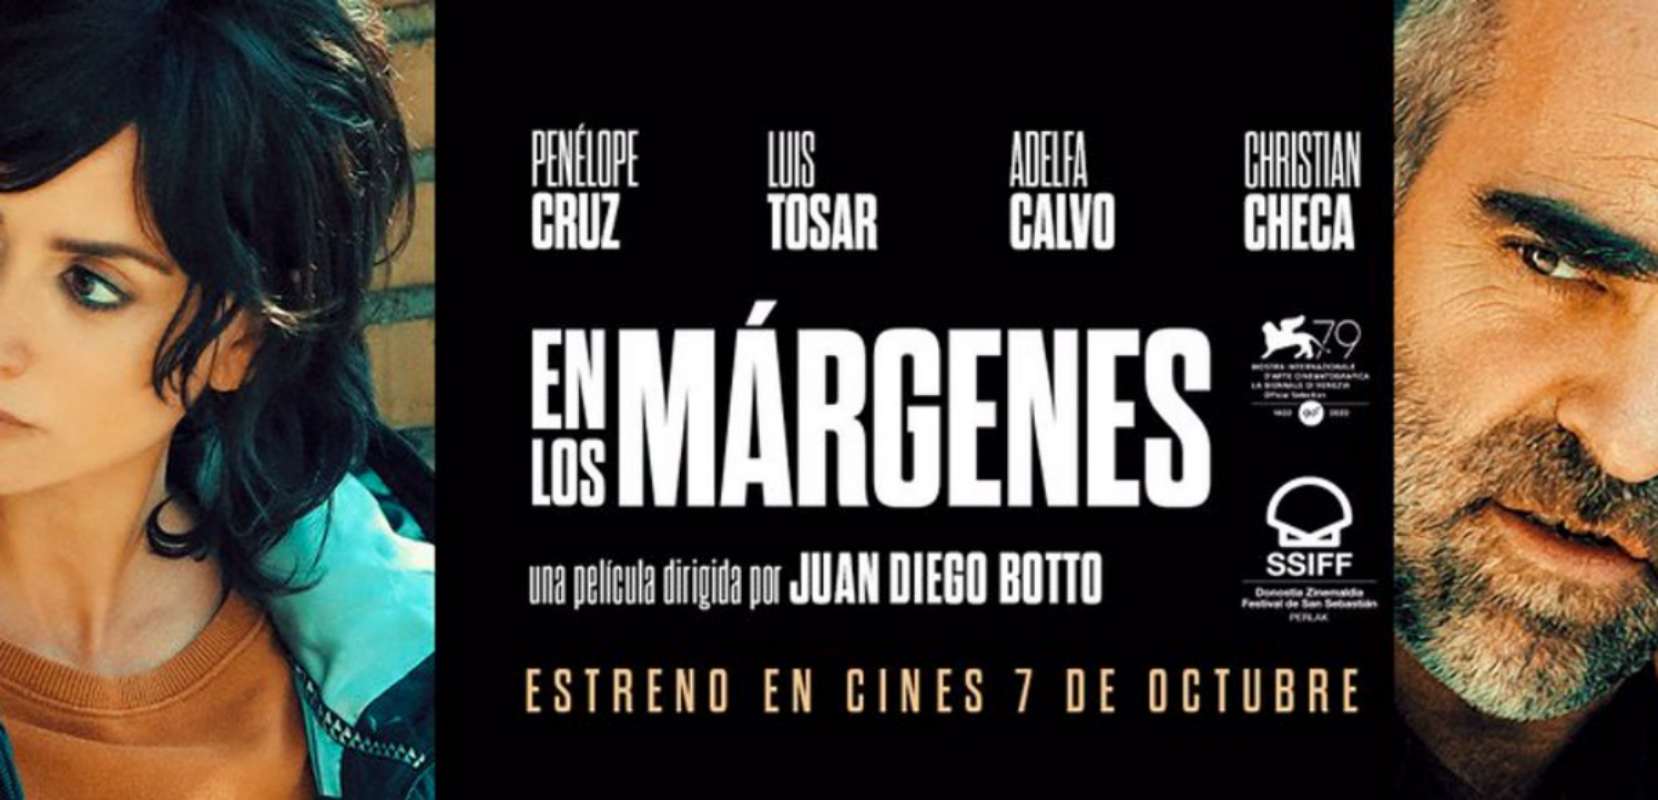 "En los márgenes", de Juan Diego Botto, será una de las películas que se podrán ver en el Cineclub Toledo.